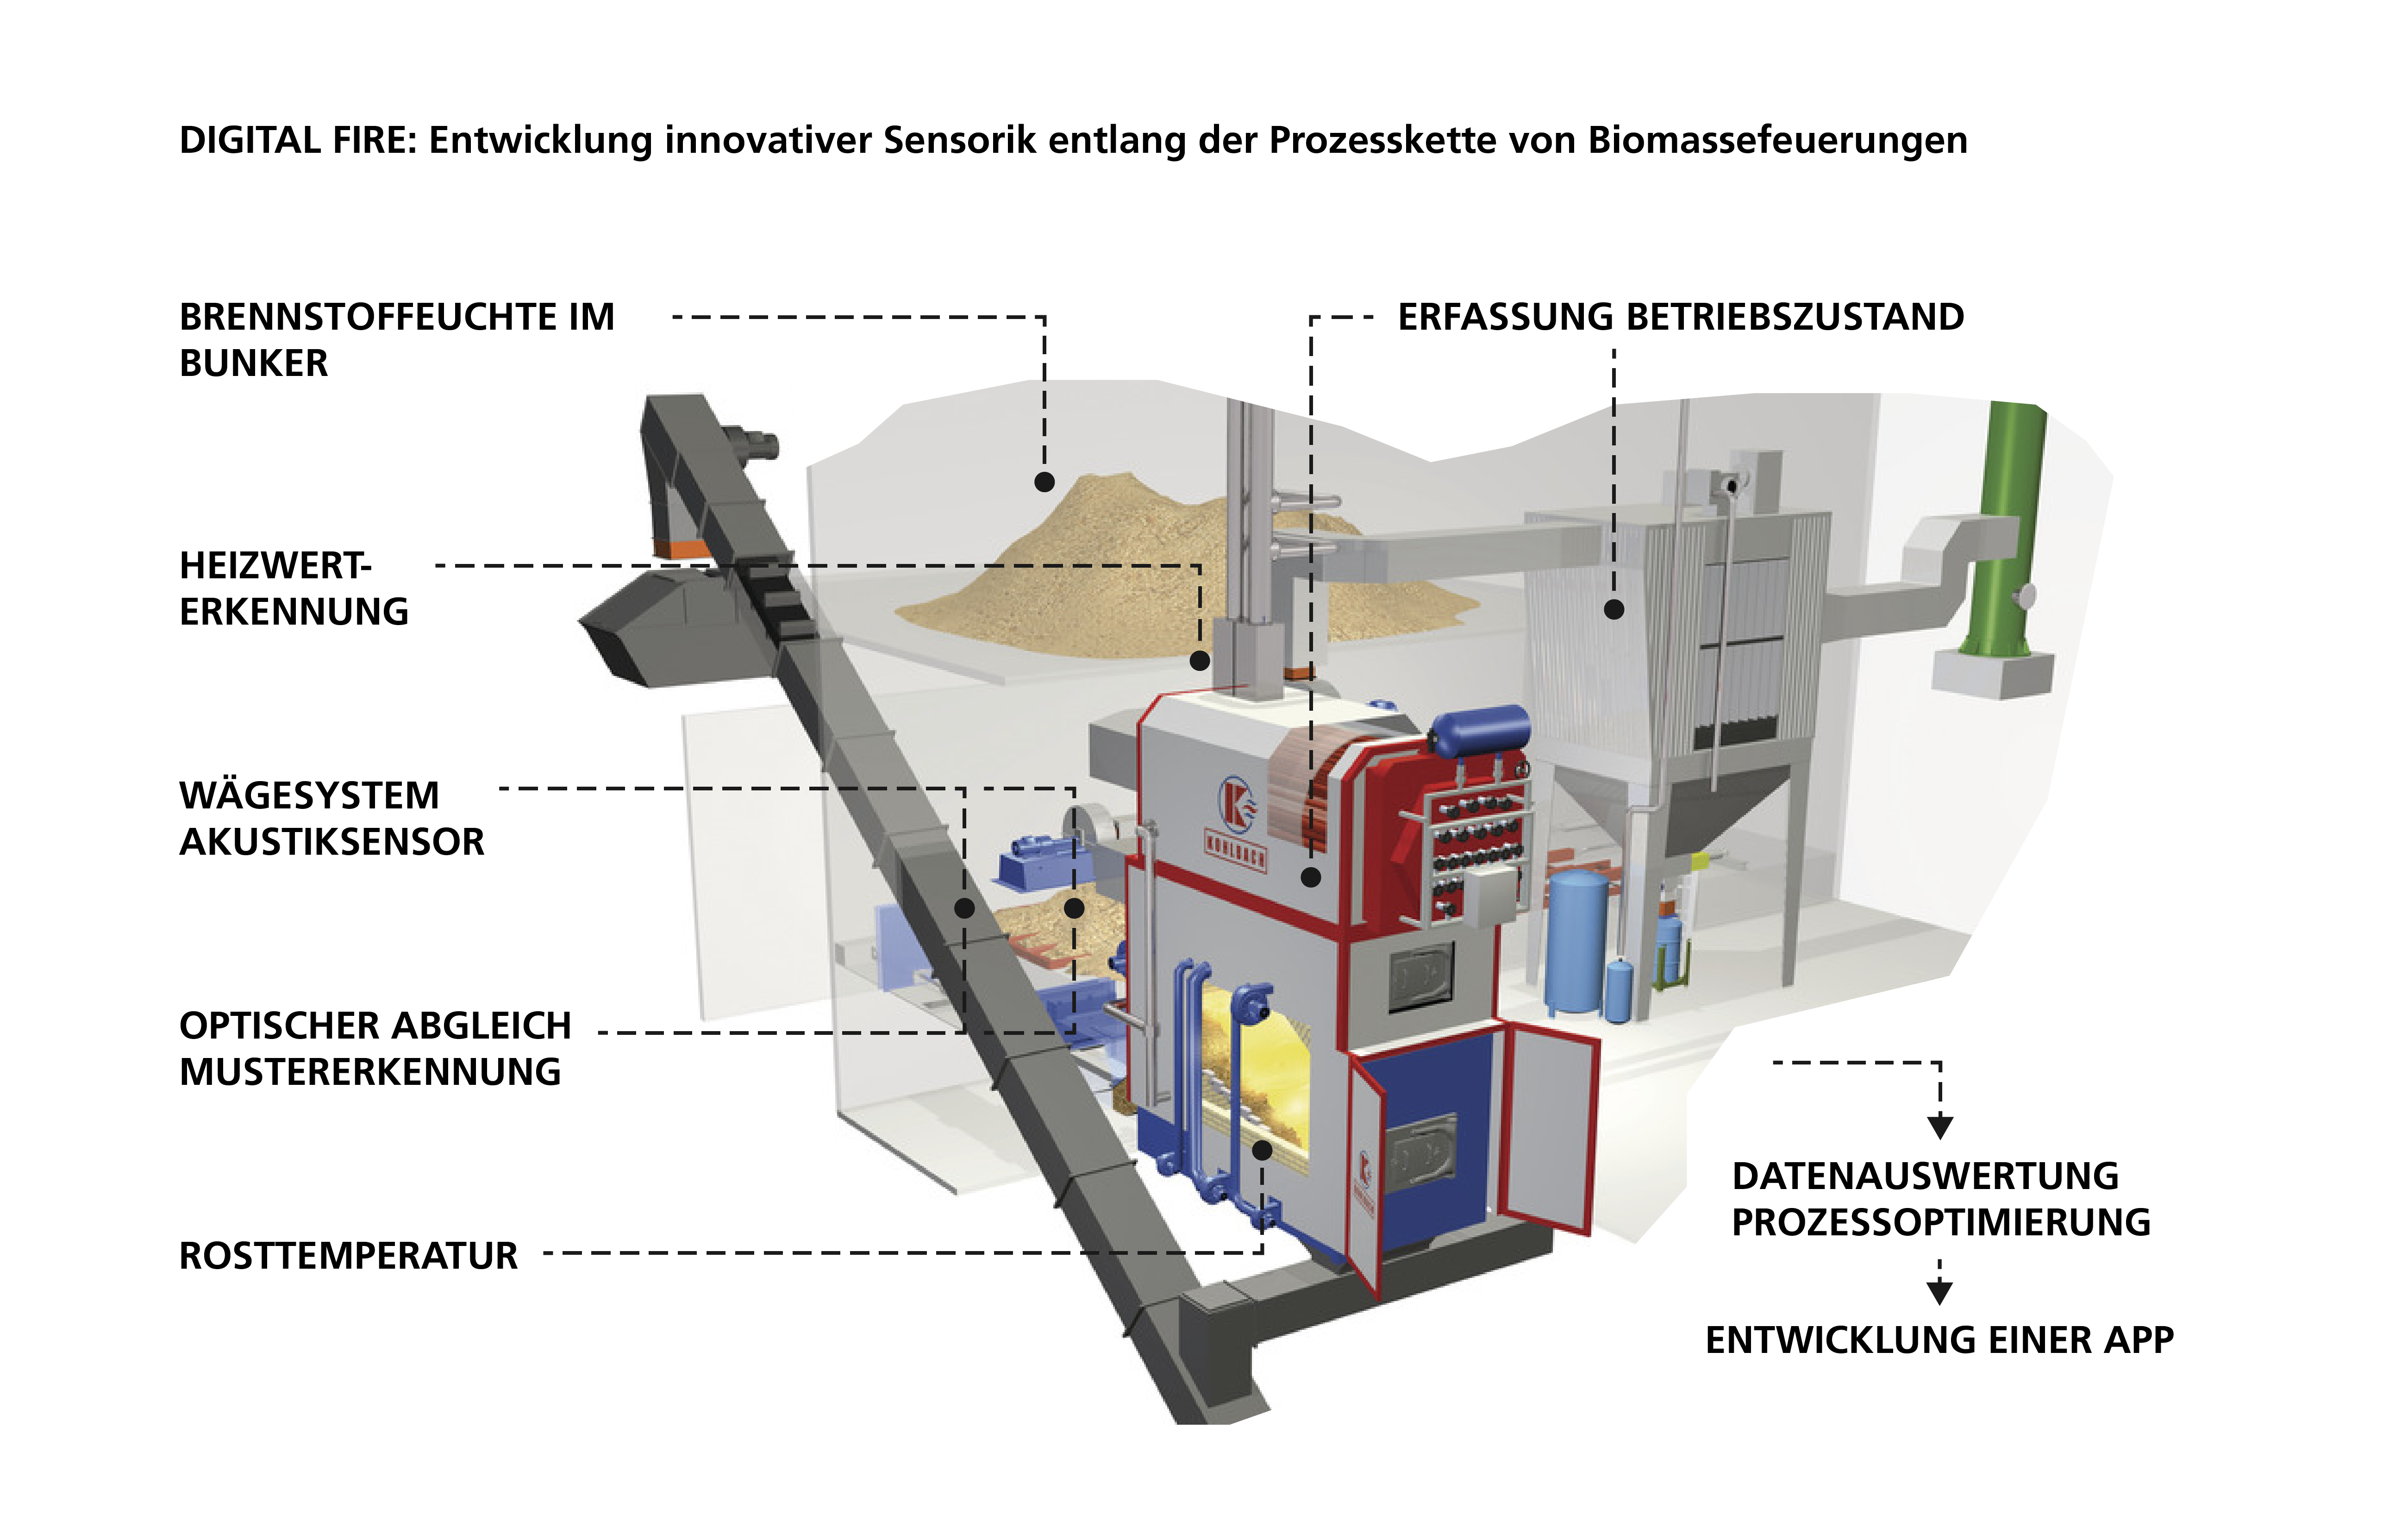 DIGITAL FIRE: Entwicklung innovativer Sensorik entlang der Prozesskette von Biomassefeuerungen